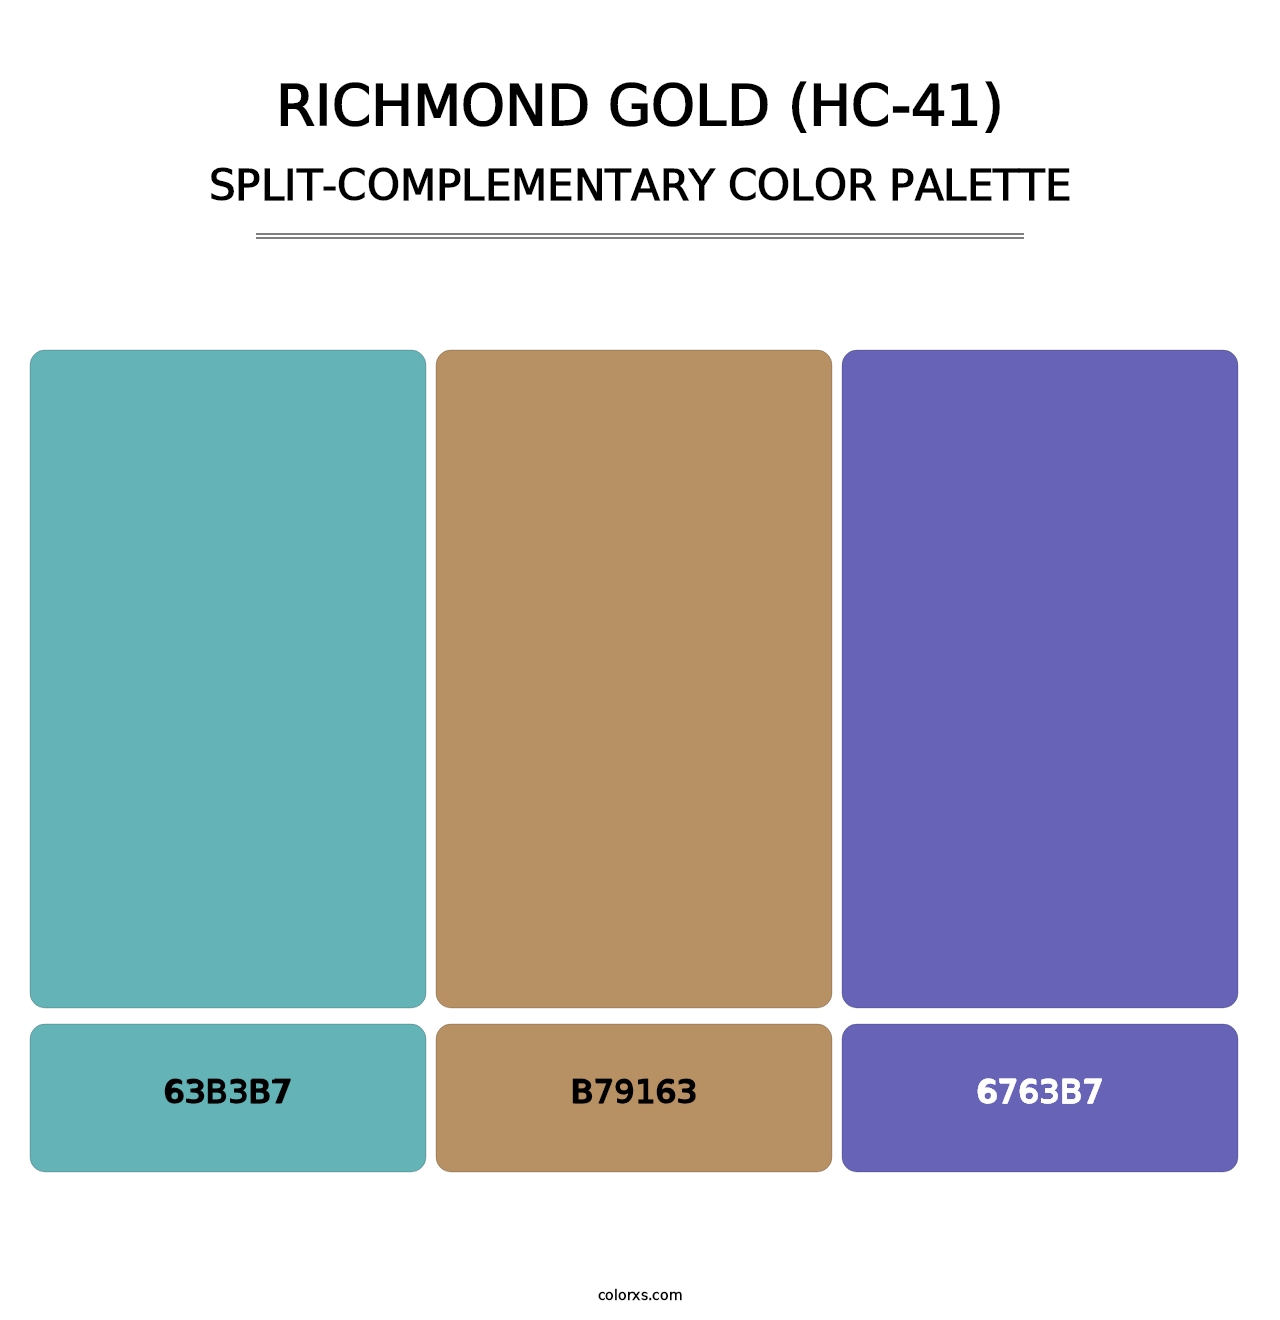 Richmond Gold (HC-41) - Split-Complementary Color Palette